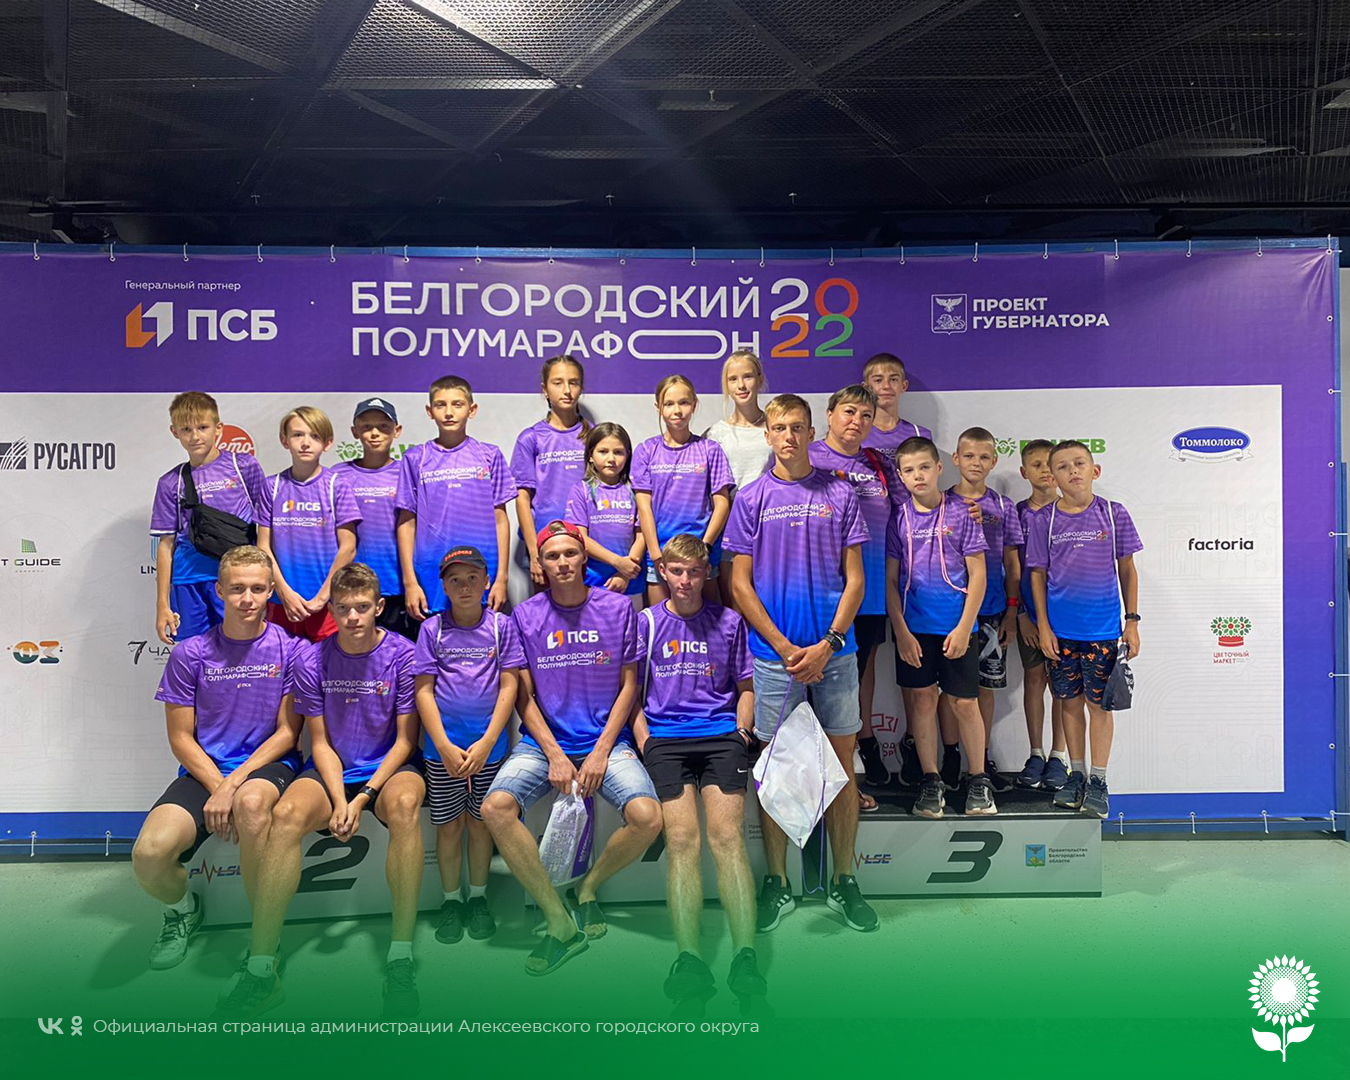 Алексеевские спортсмены приняли участие в легкоатлетическом забеге «Белгородский полумарафон»